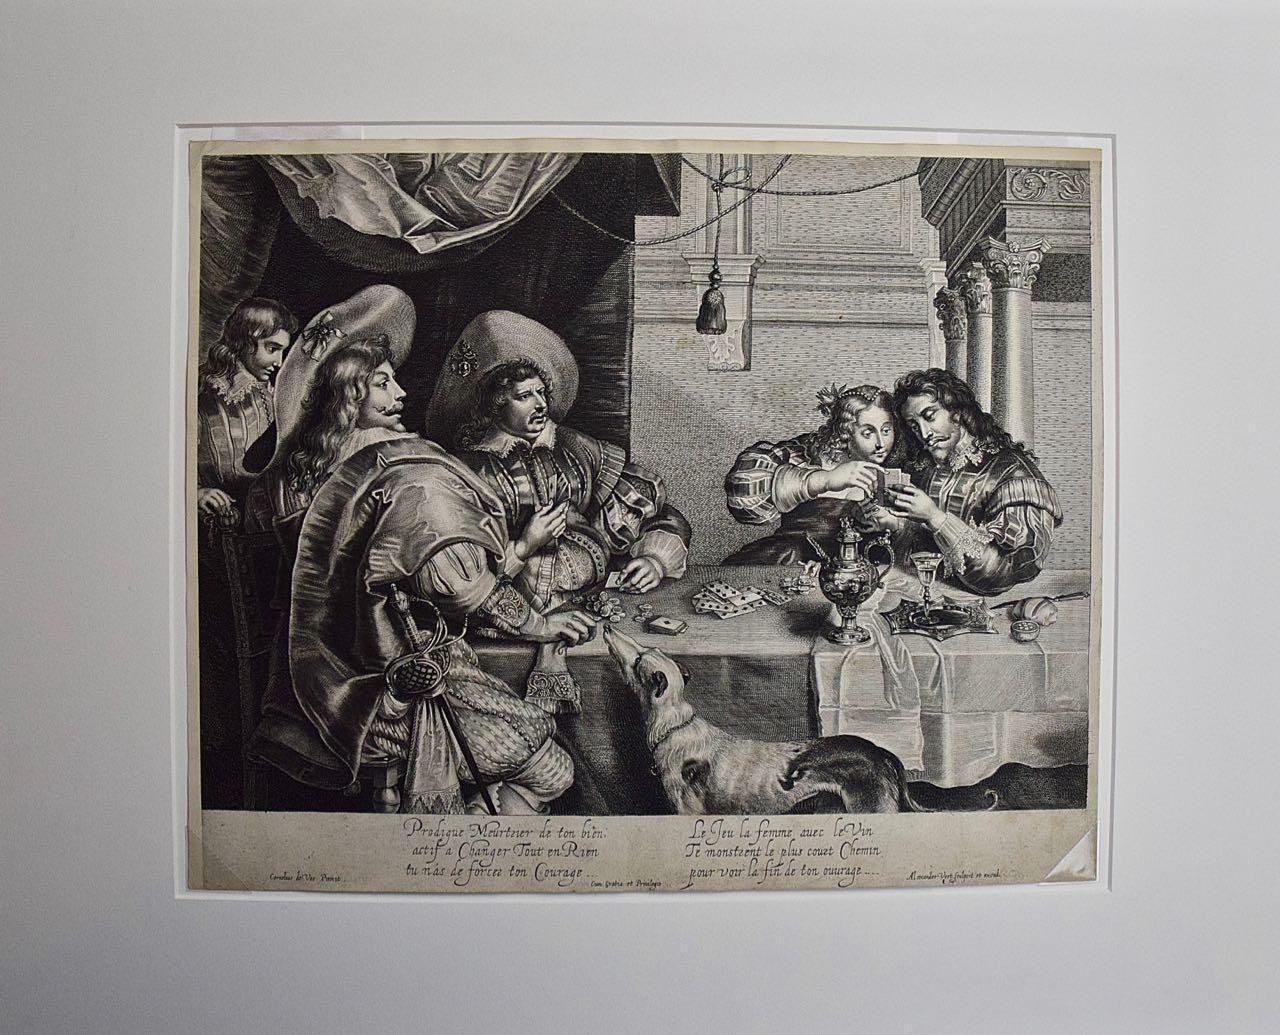  Das Kartenspiel: Ein Kupferstich von A. Voet nach Cornelis de Vos aus dem frühen 17. Jahrhundert – Print von Alexander Voet